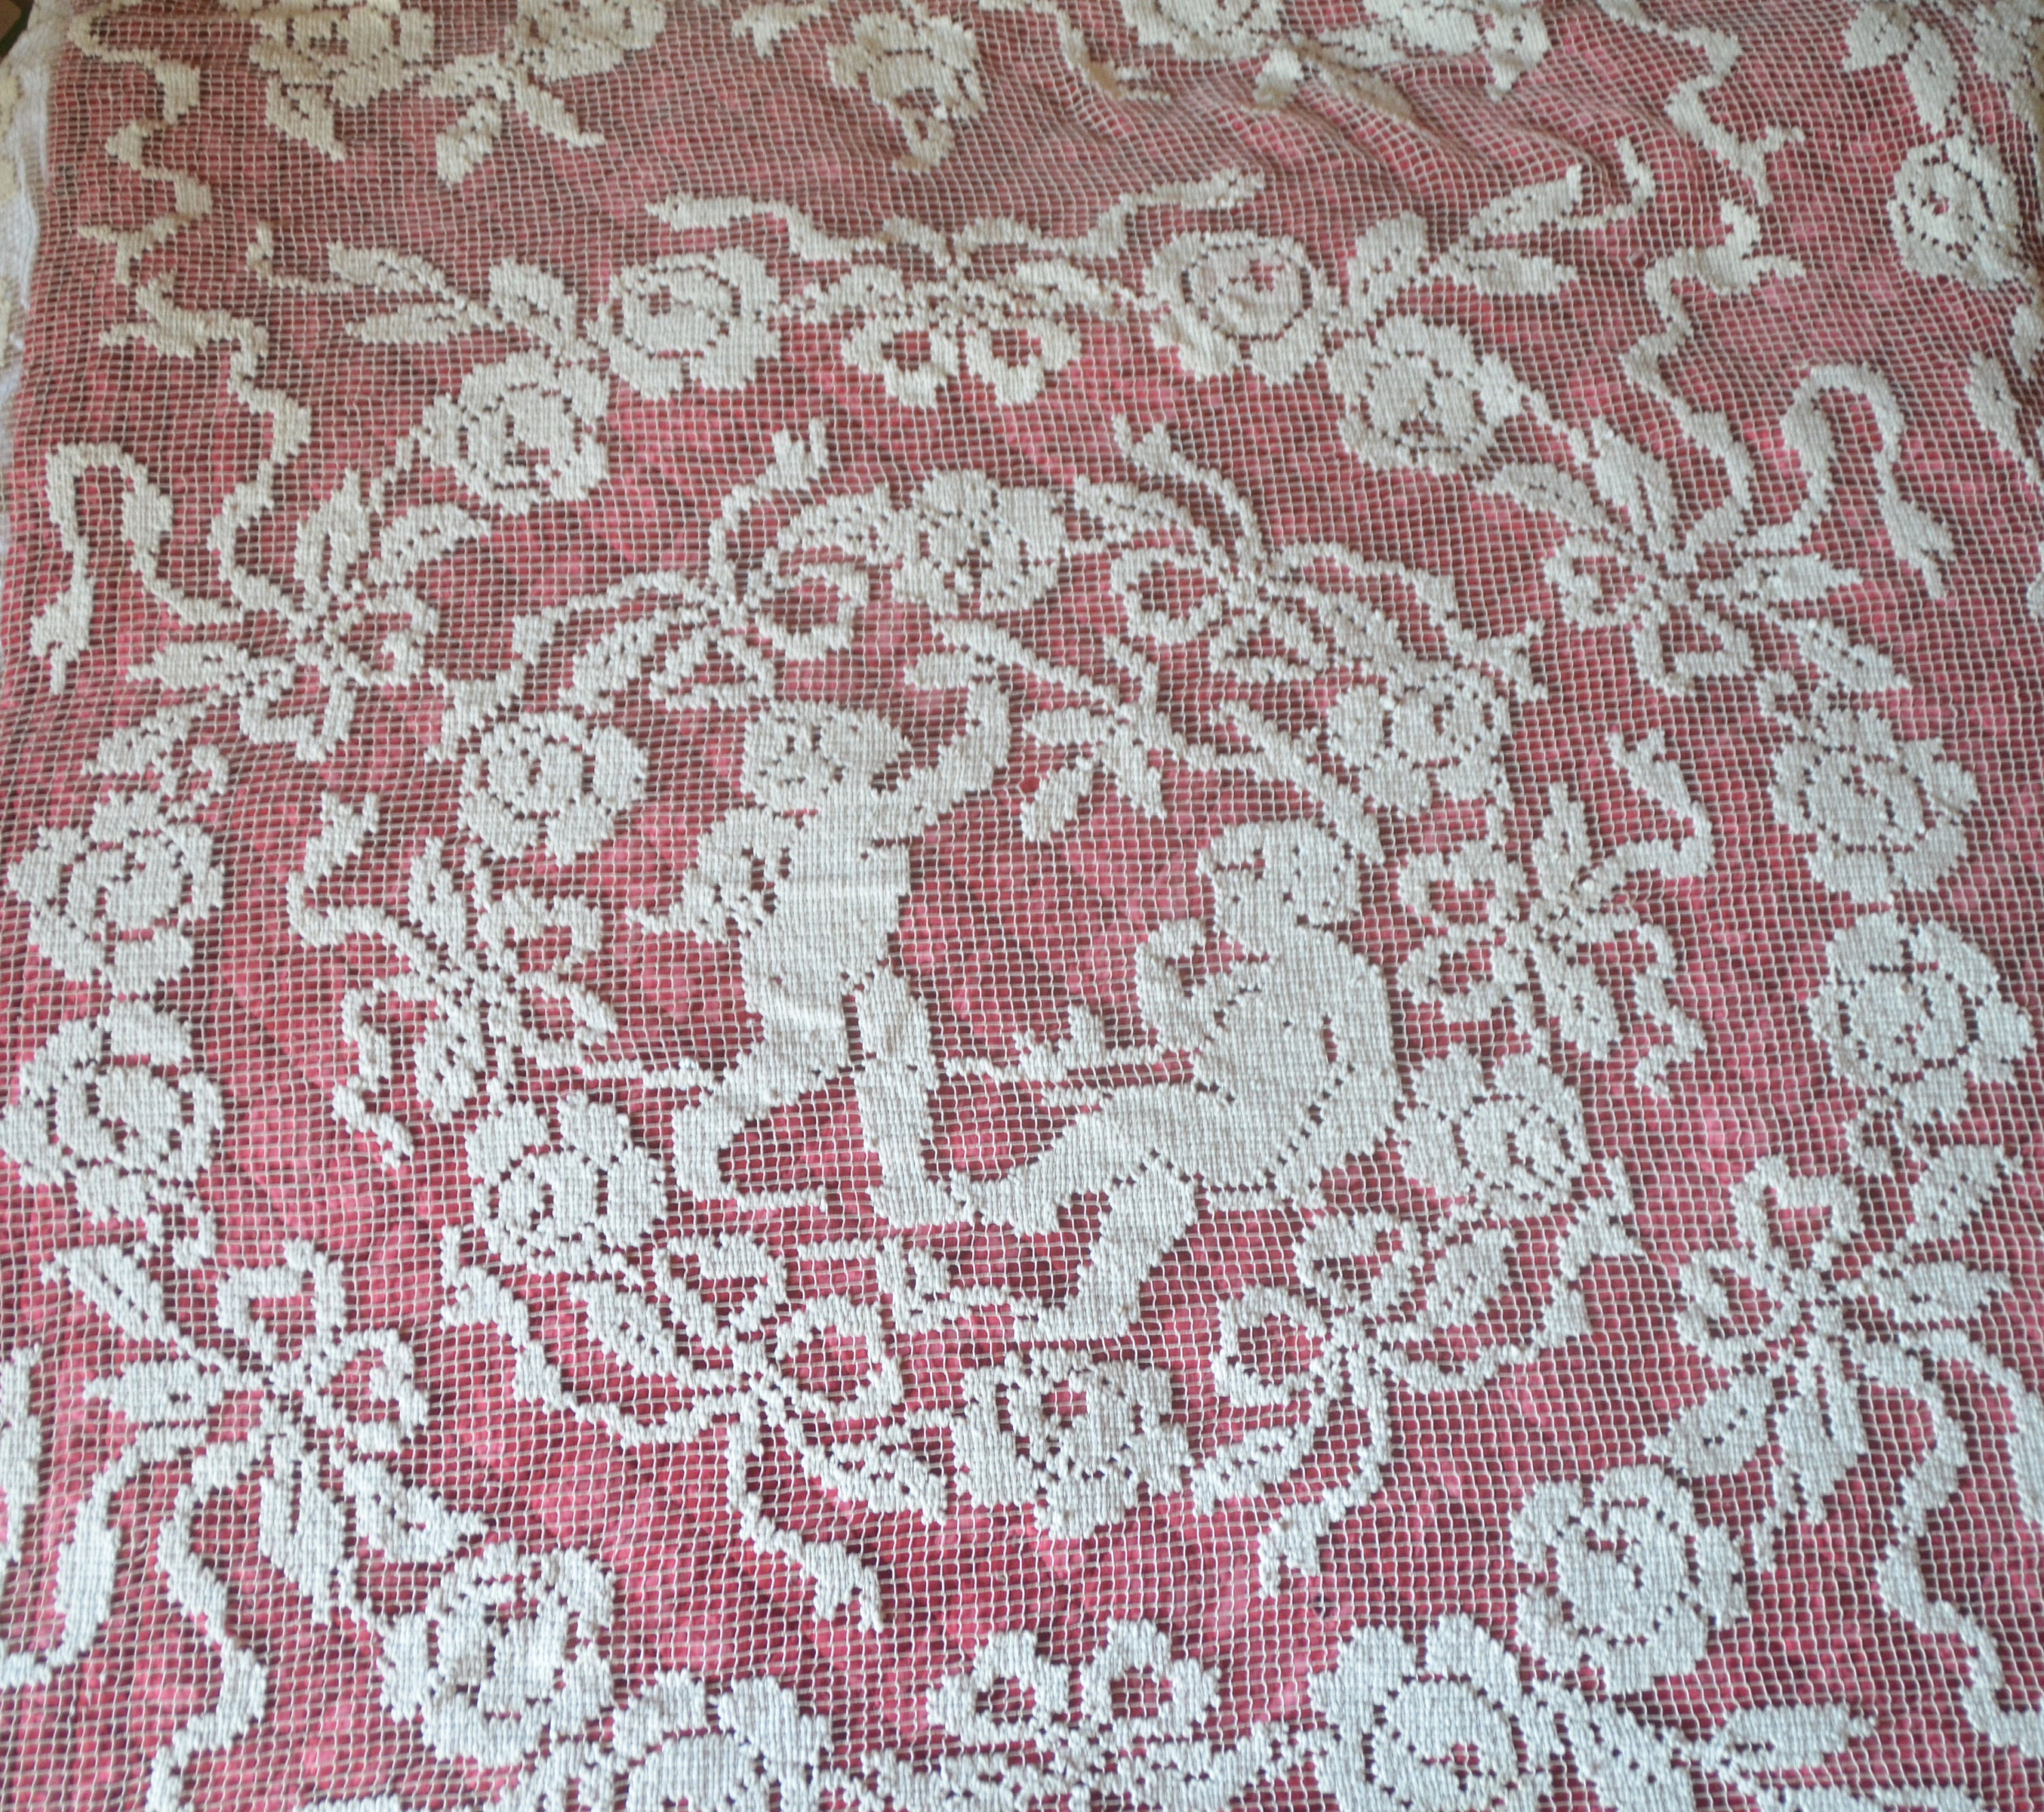 Couverture Antique de Lit Filet Coton et Linge, Putti/Angelot/Chérubins Dans Un Cartouche Floral Rub